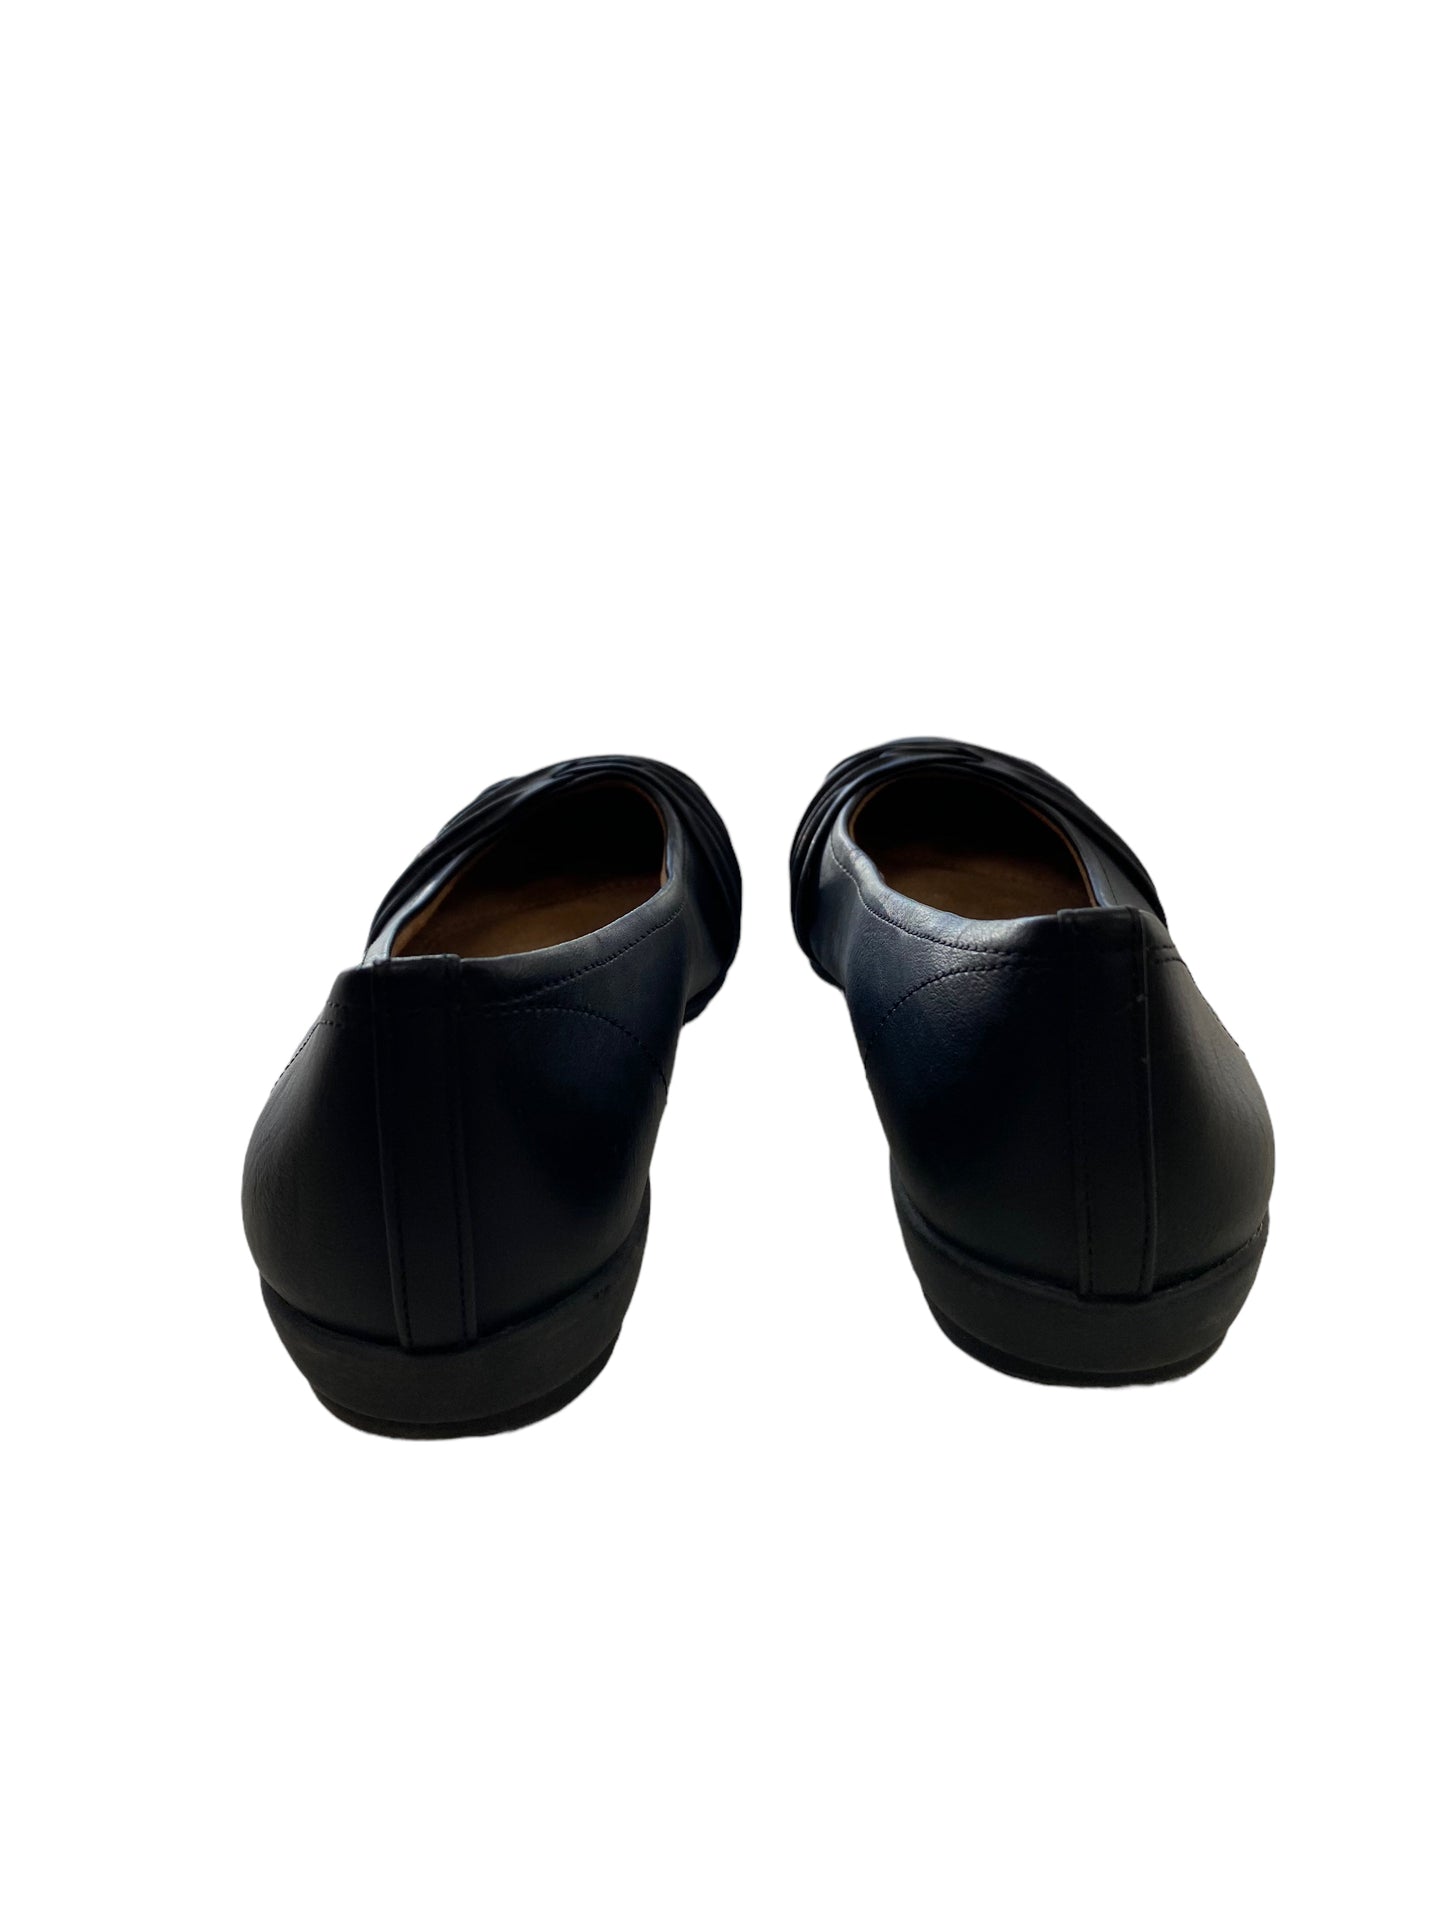 Black Shoes Flats Natural Soul, Size 6.5